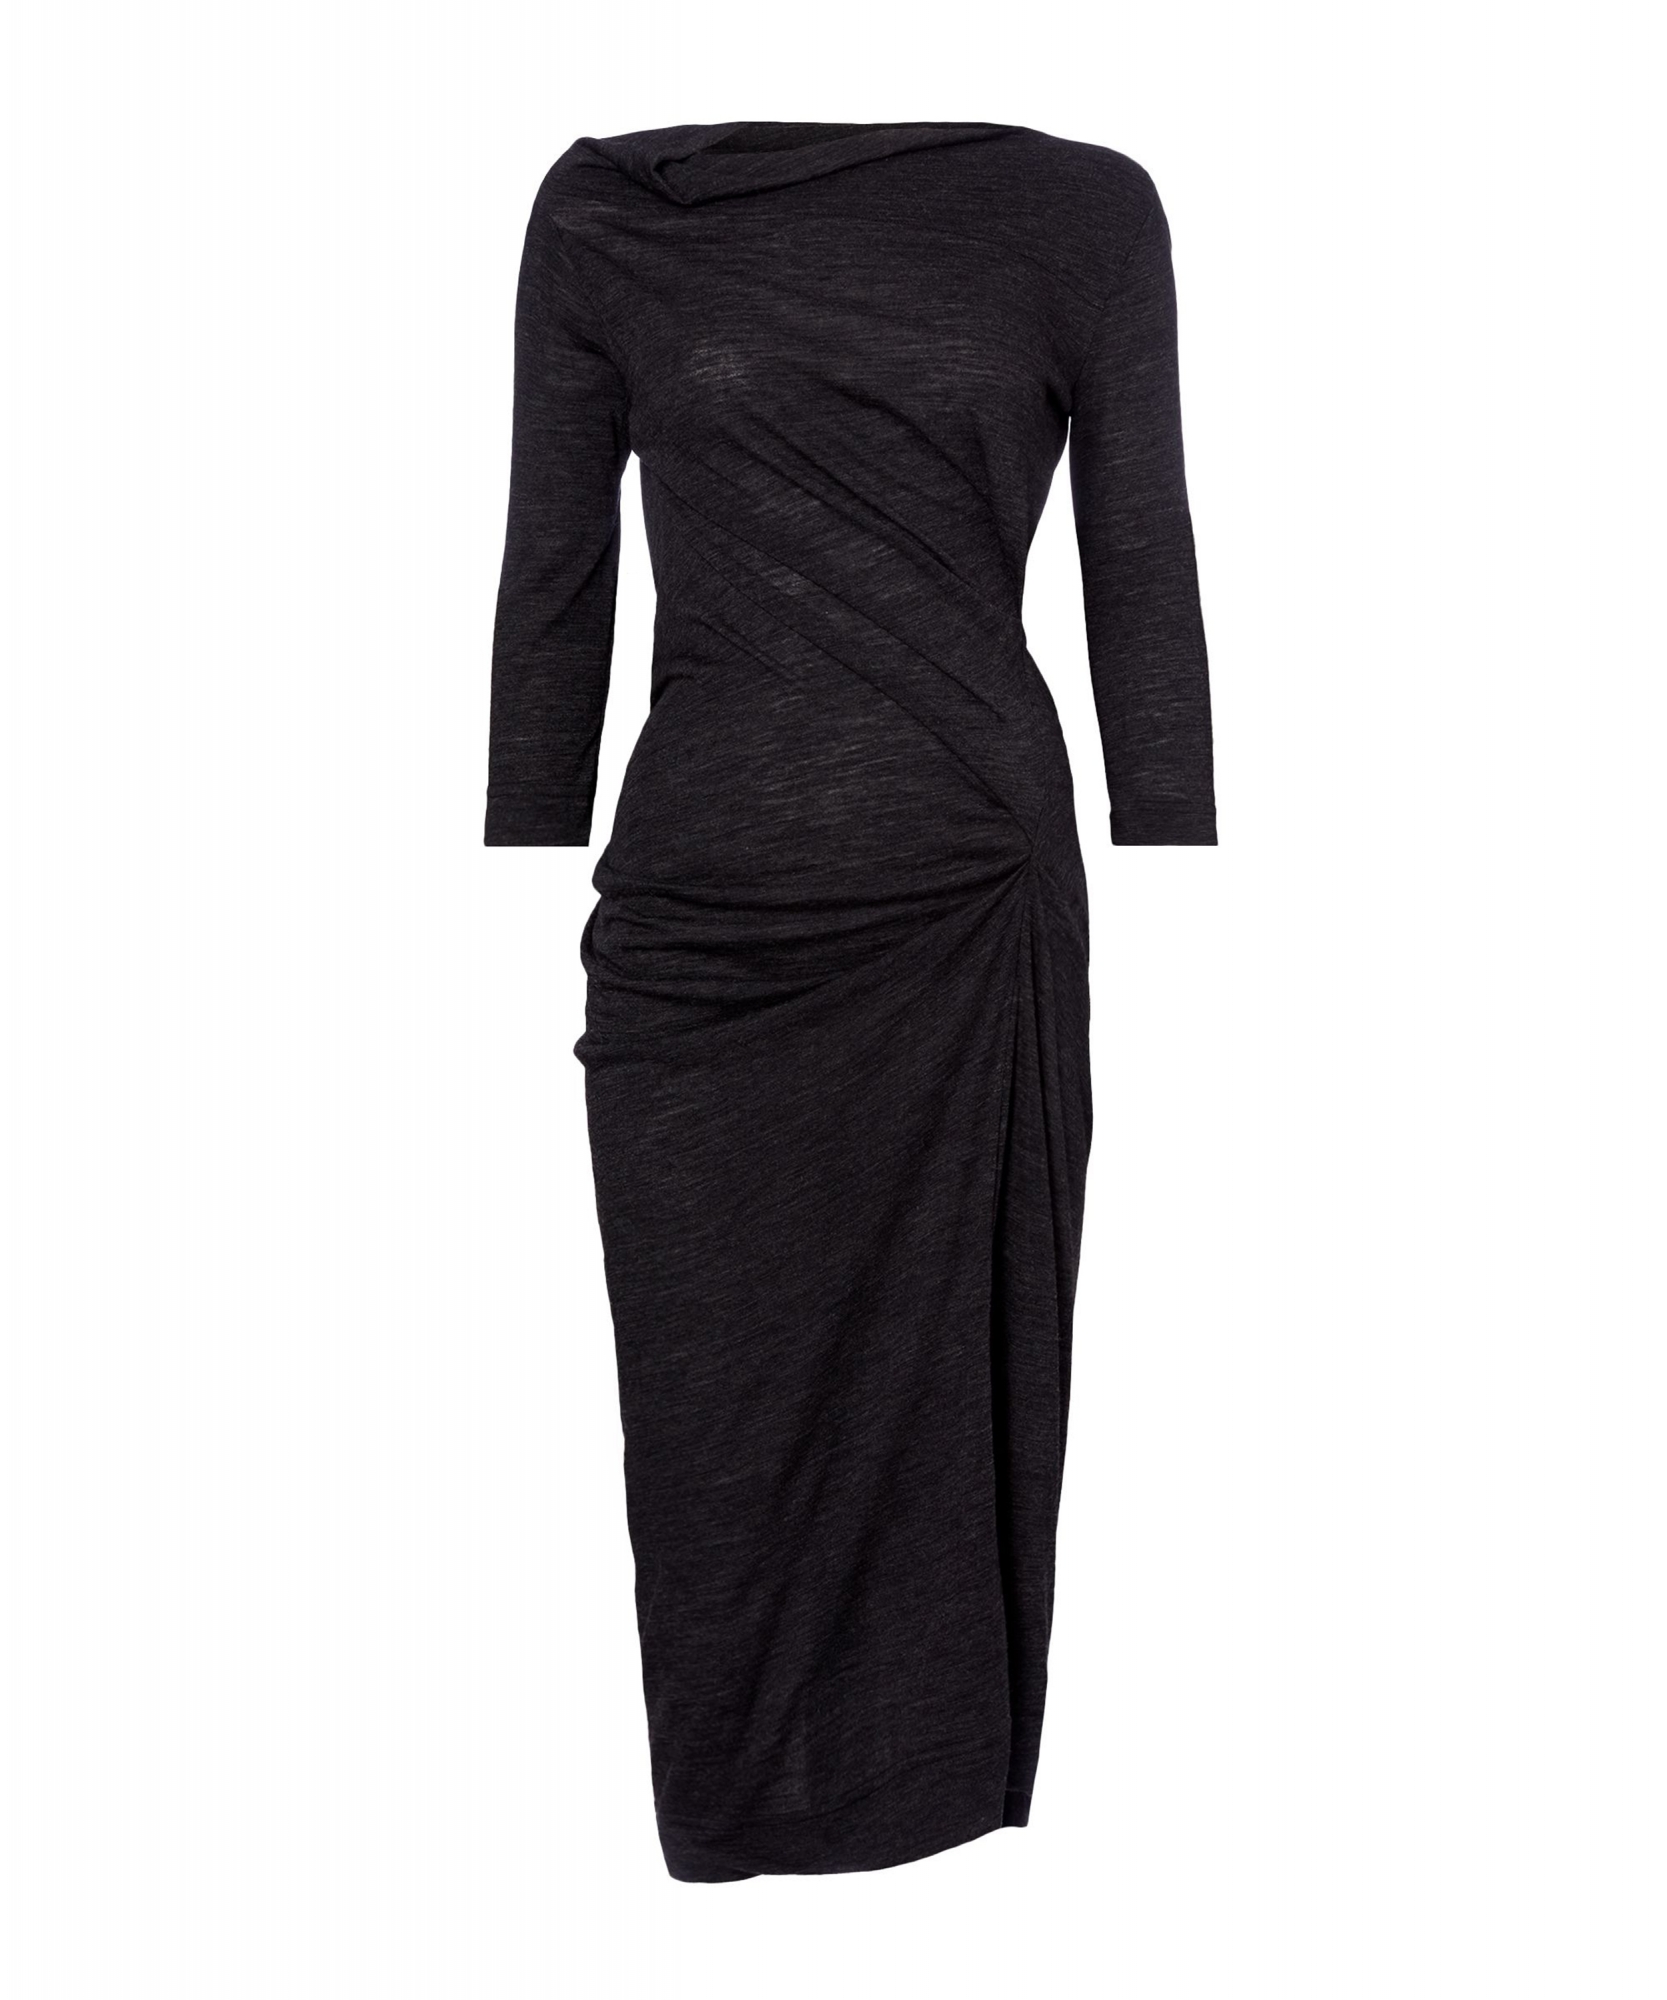 Viviennen Westwood Black Jersey Dress - Vivienne Westwood | La Doyenne